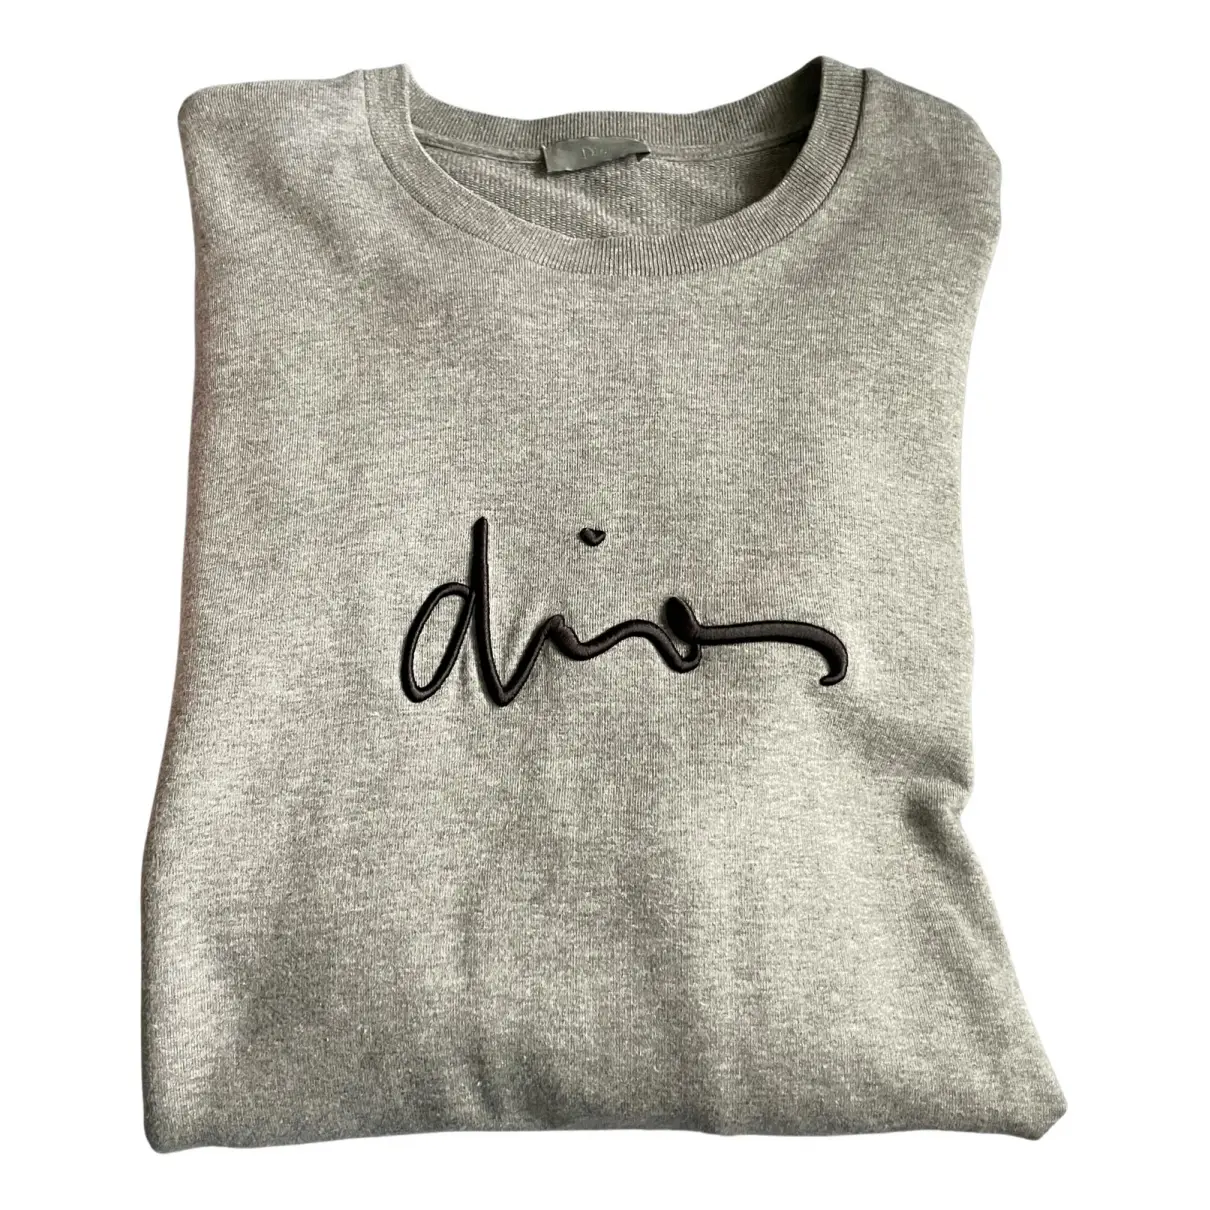 Buy Dior Homme Sweatshirt online